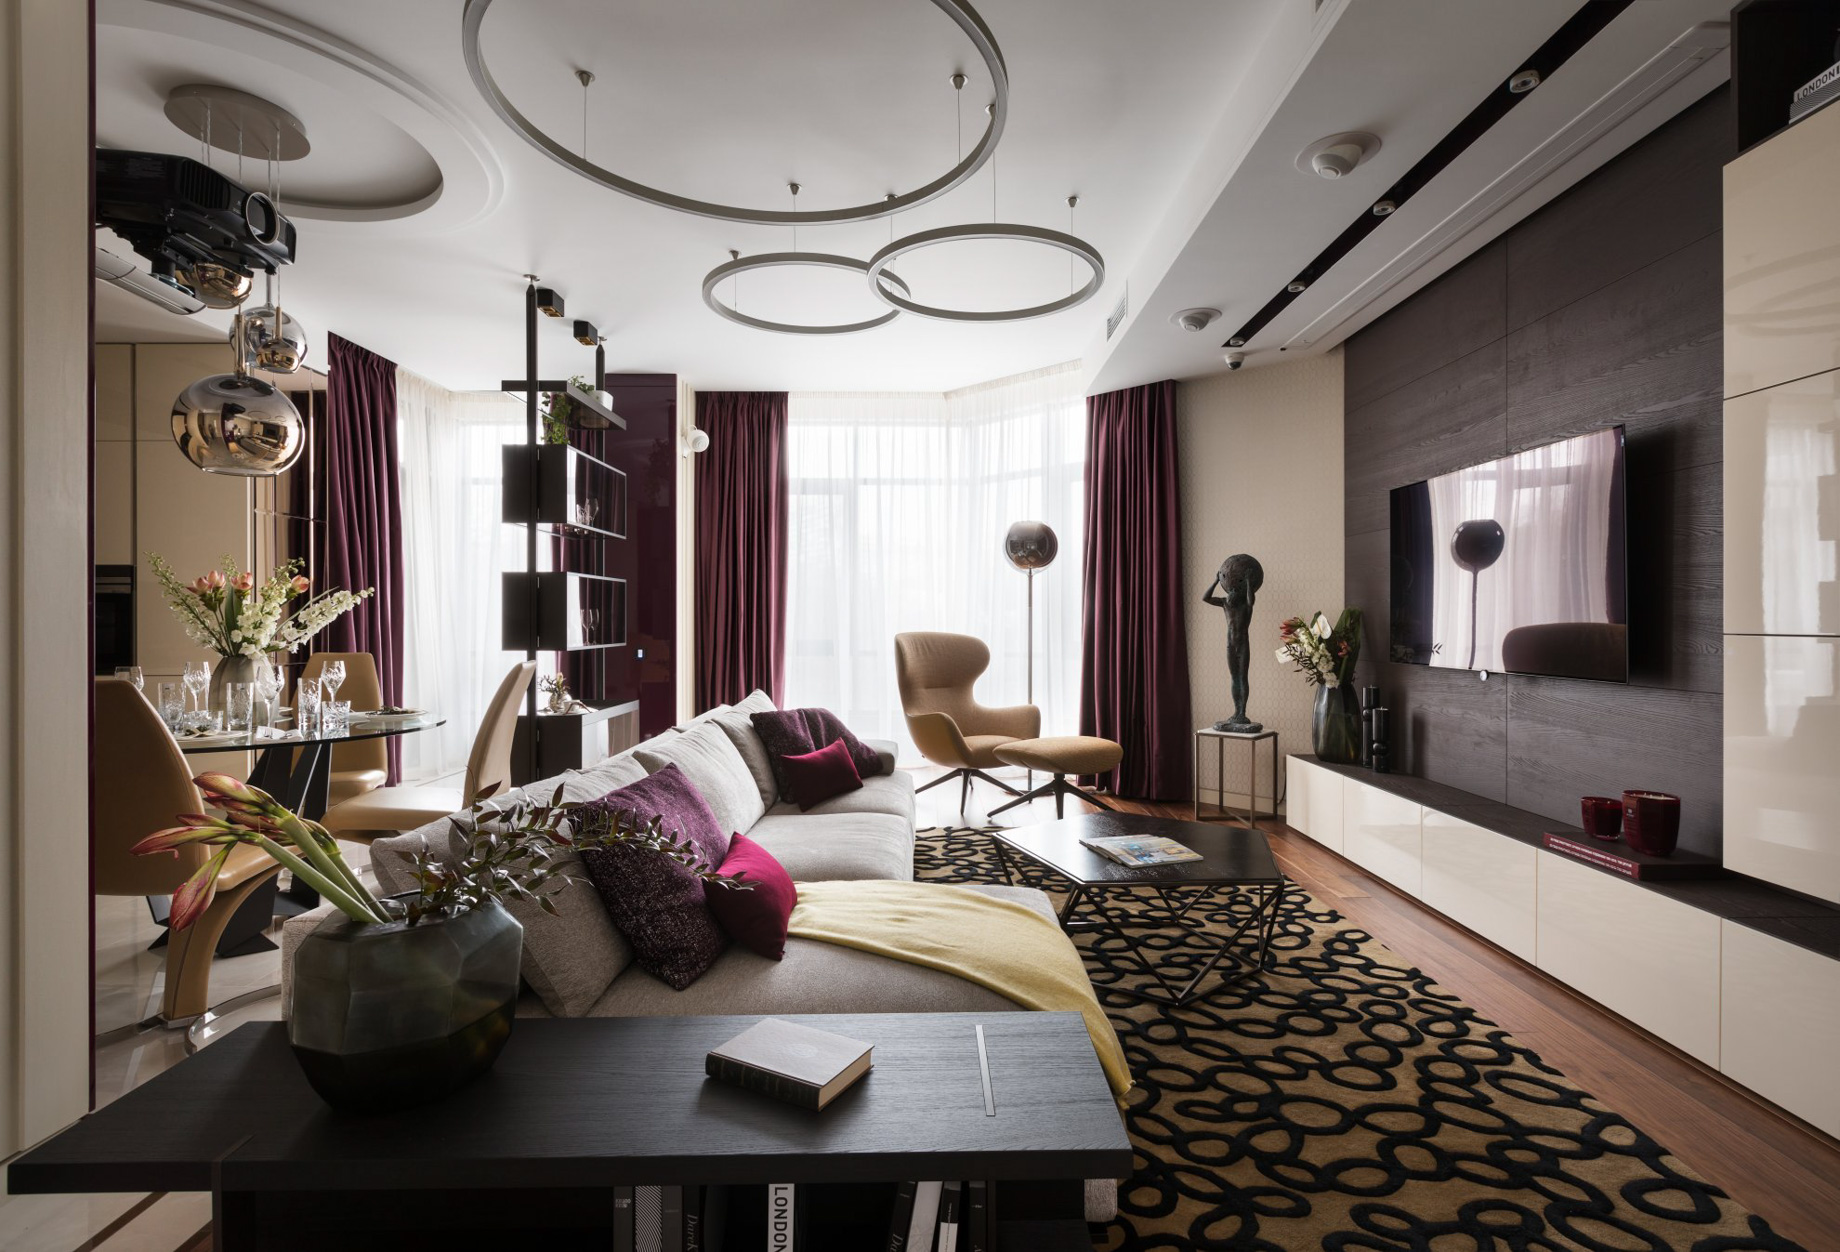 Pecher SKY Apartment Interior Design Kyiv, Ukraine – Nataly Bolshakova